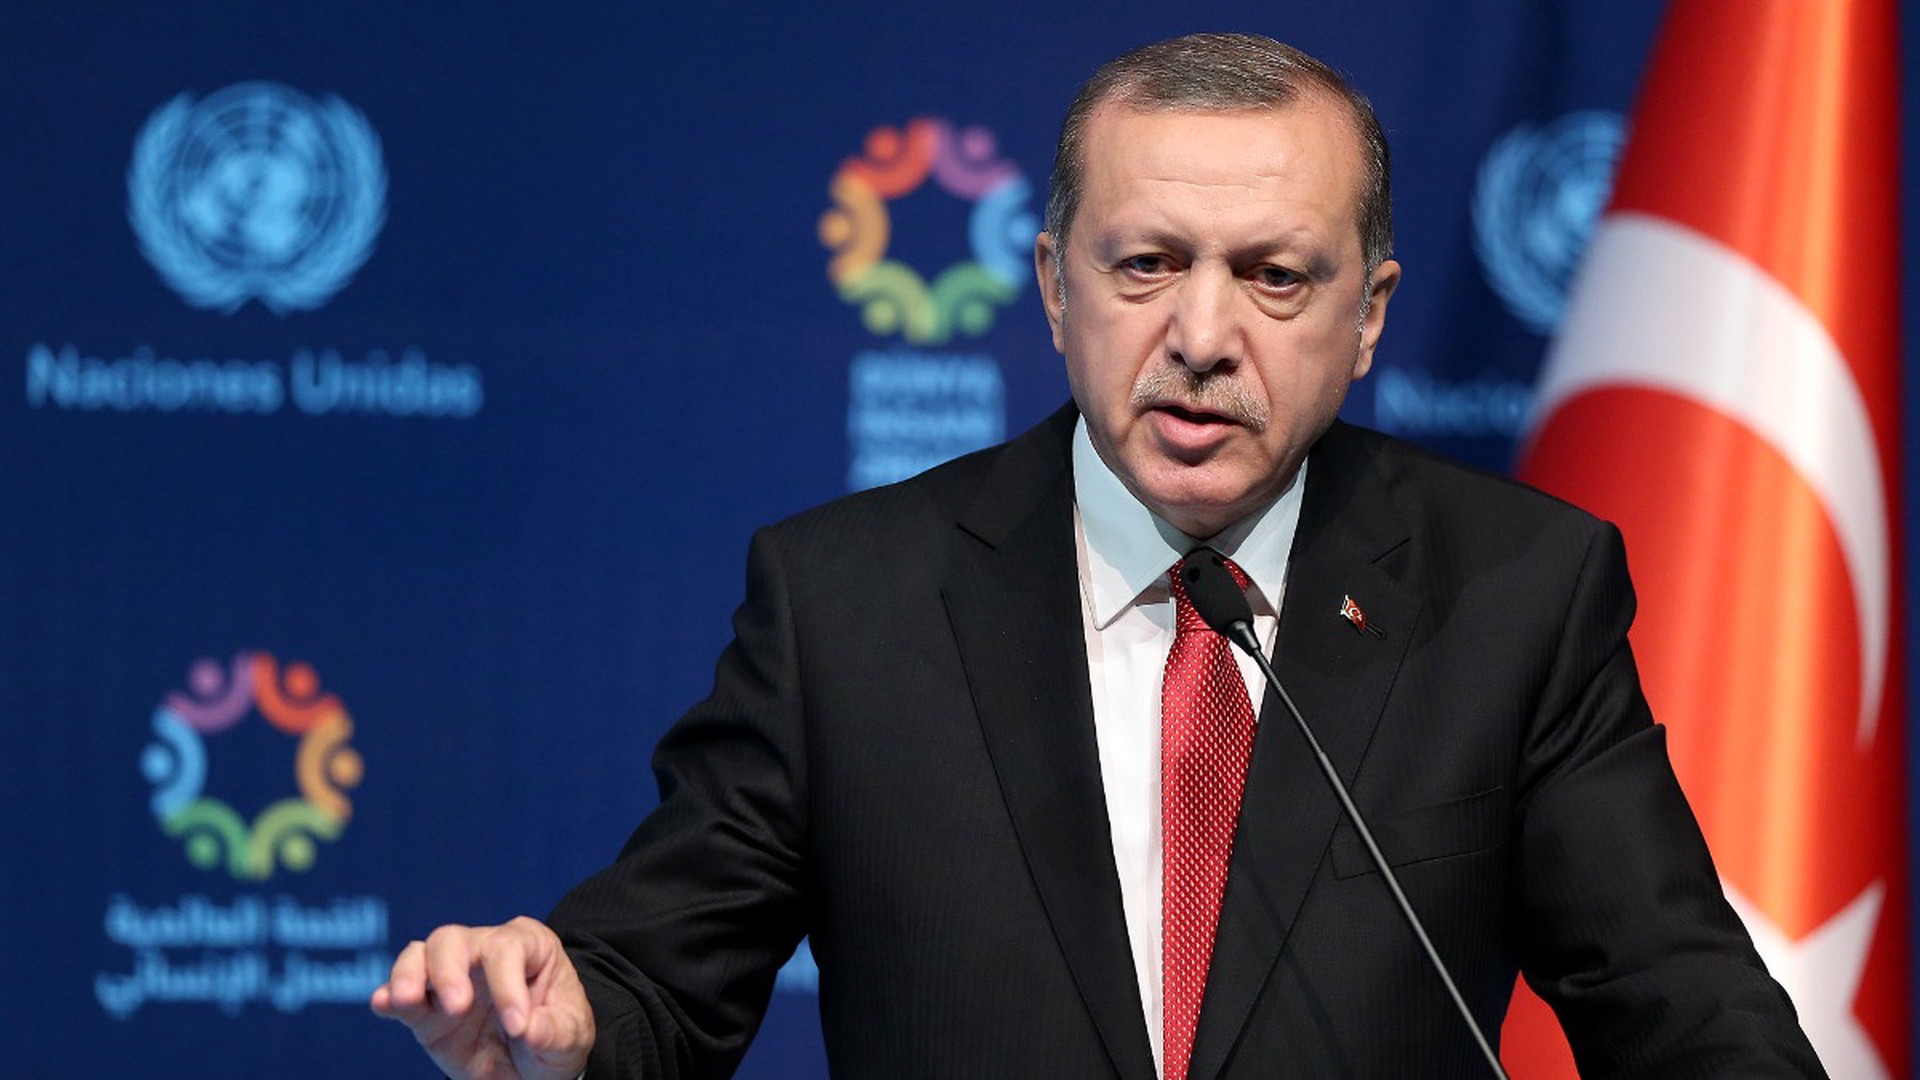 Türkiye: Эрдоган провёл экстренное заседание из-за сведений о возможном перевороте